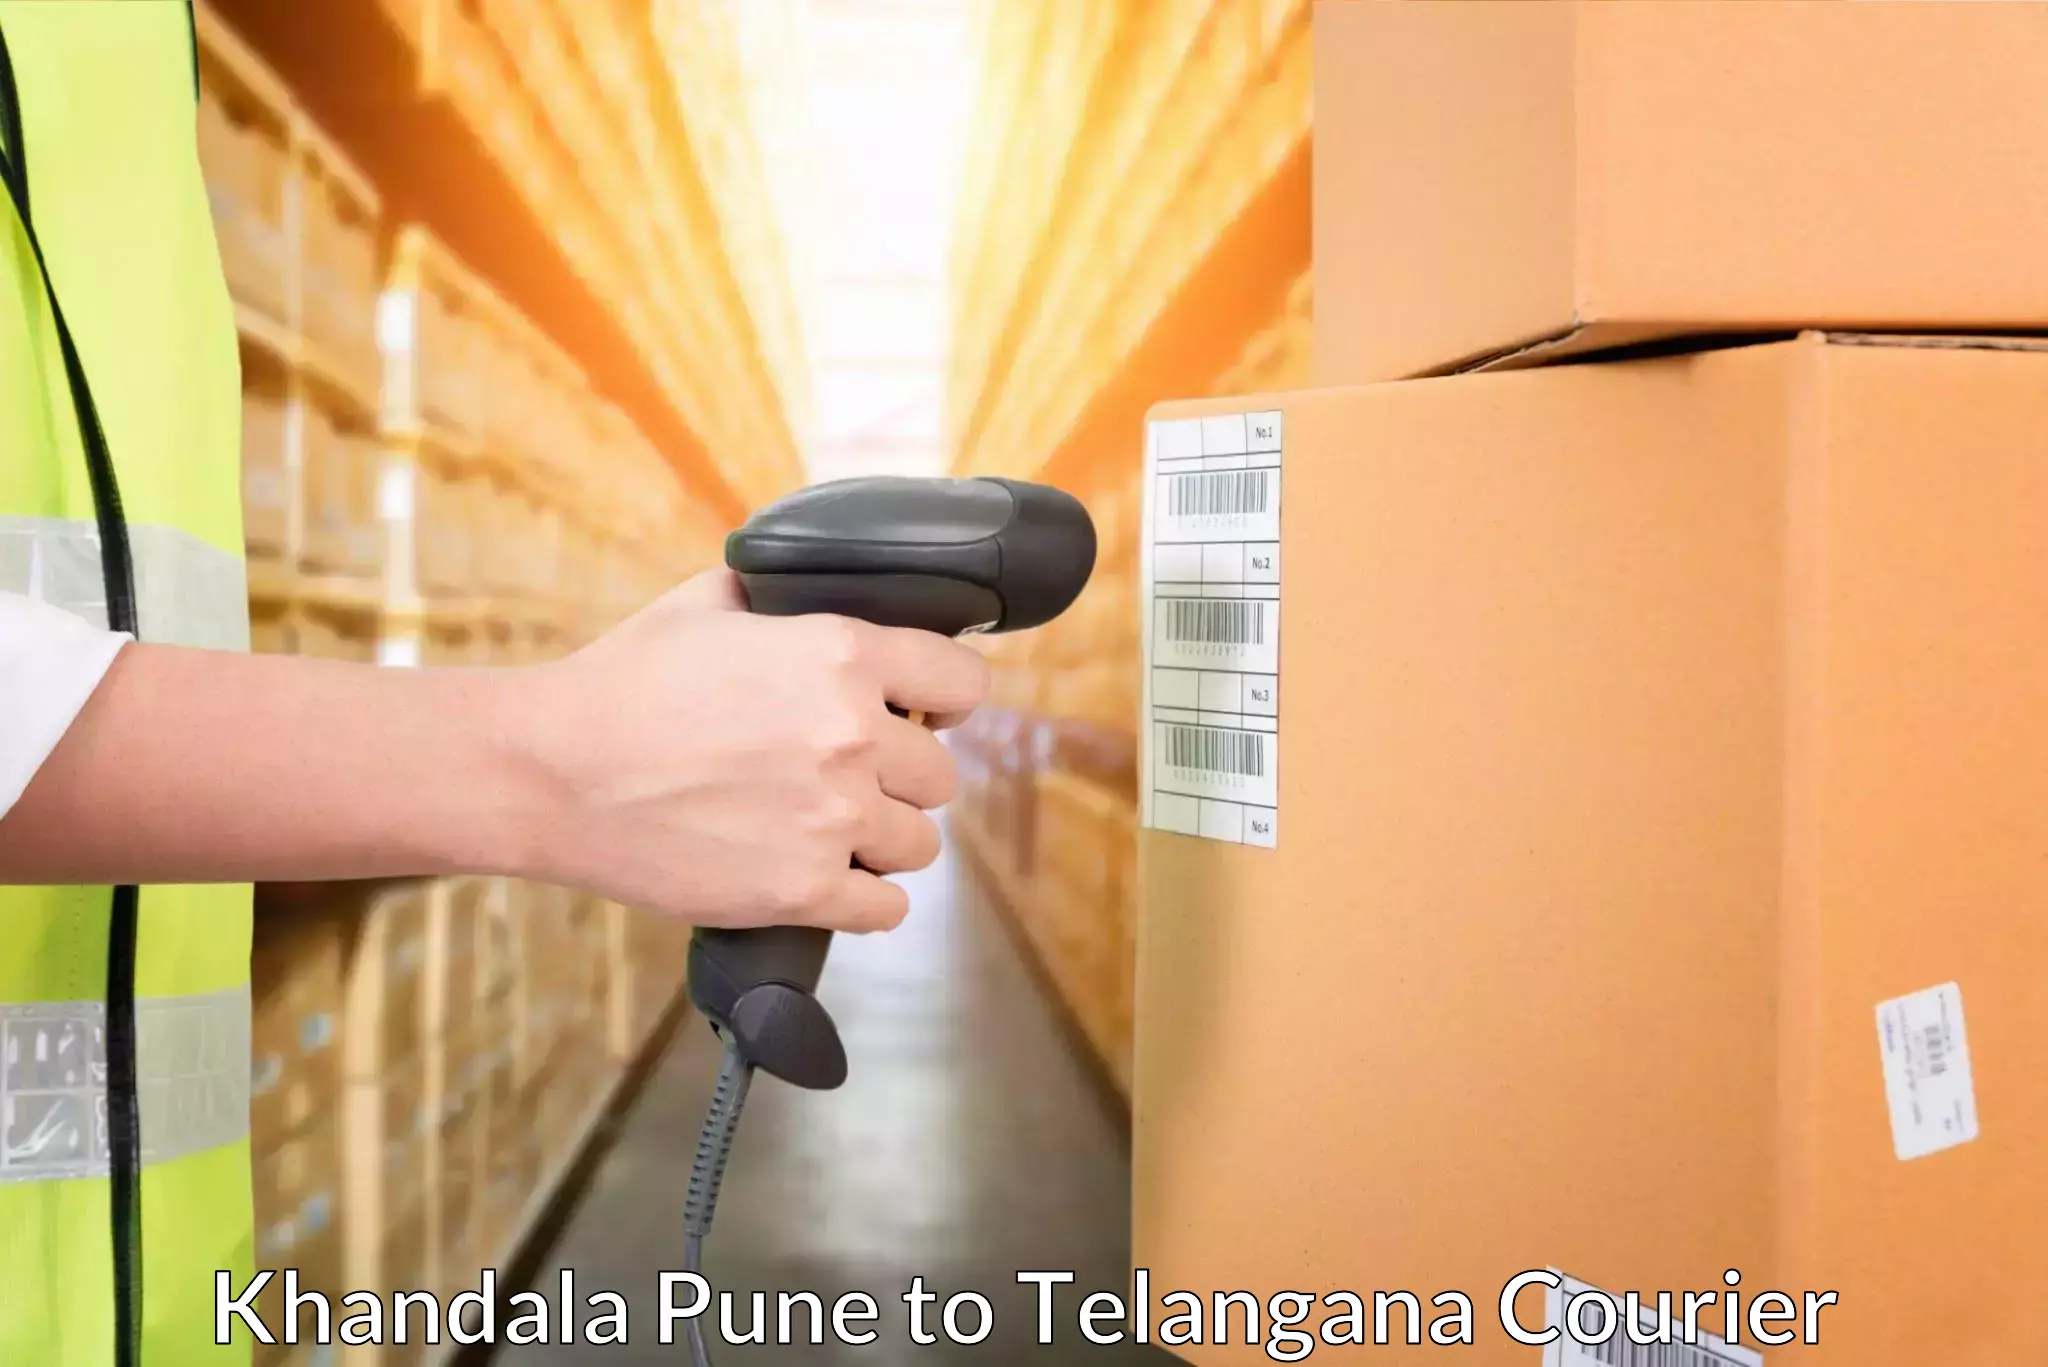 Global shipping solutions Khandala Pune to Medak